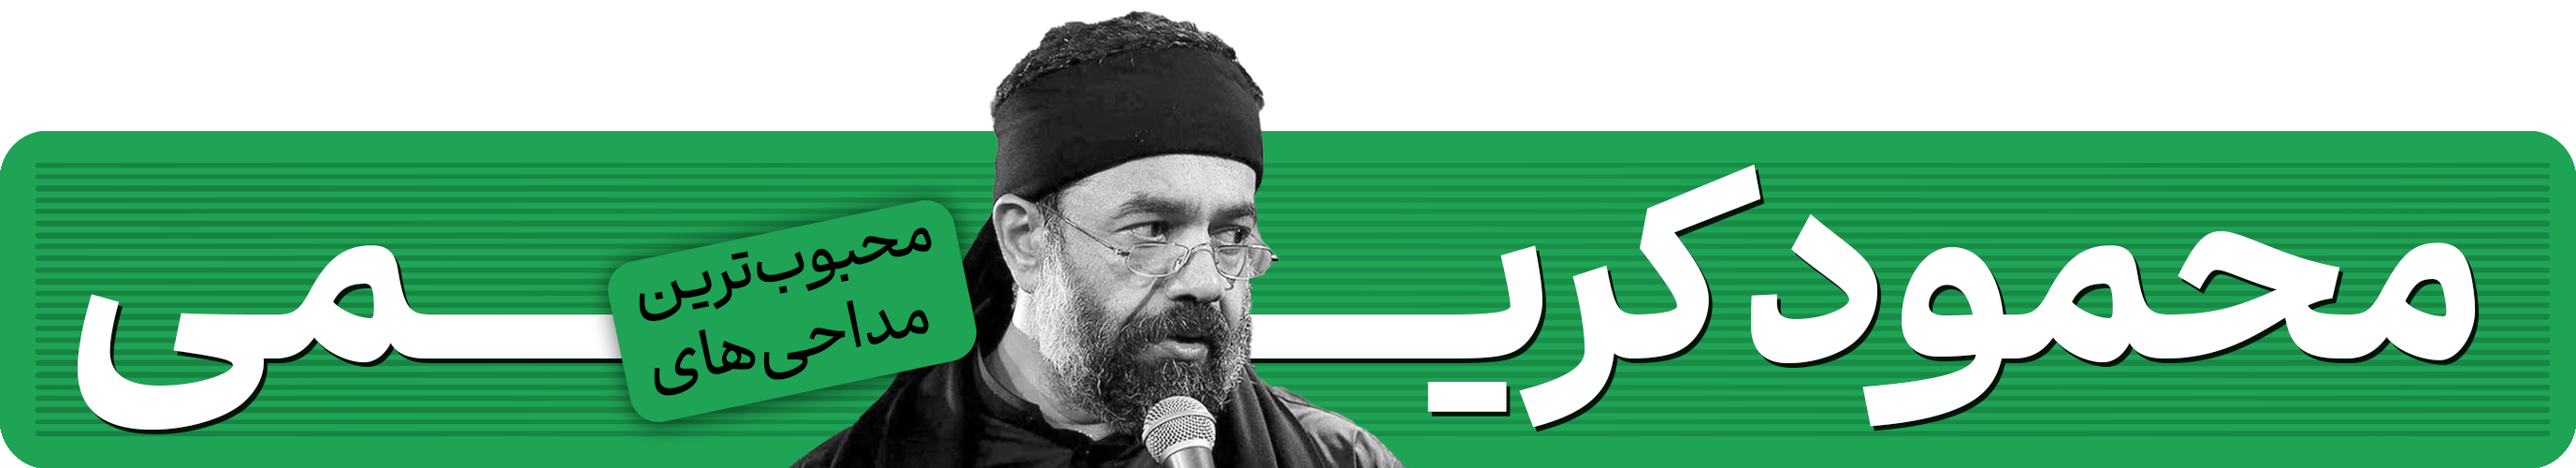 منتخب محبوب ترین مداحی های محمود کریمی